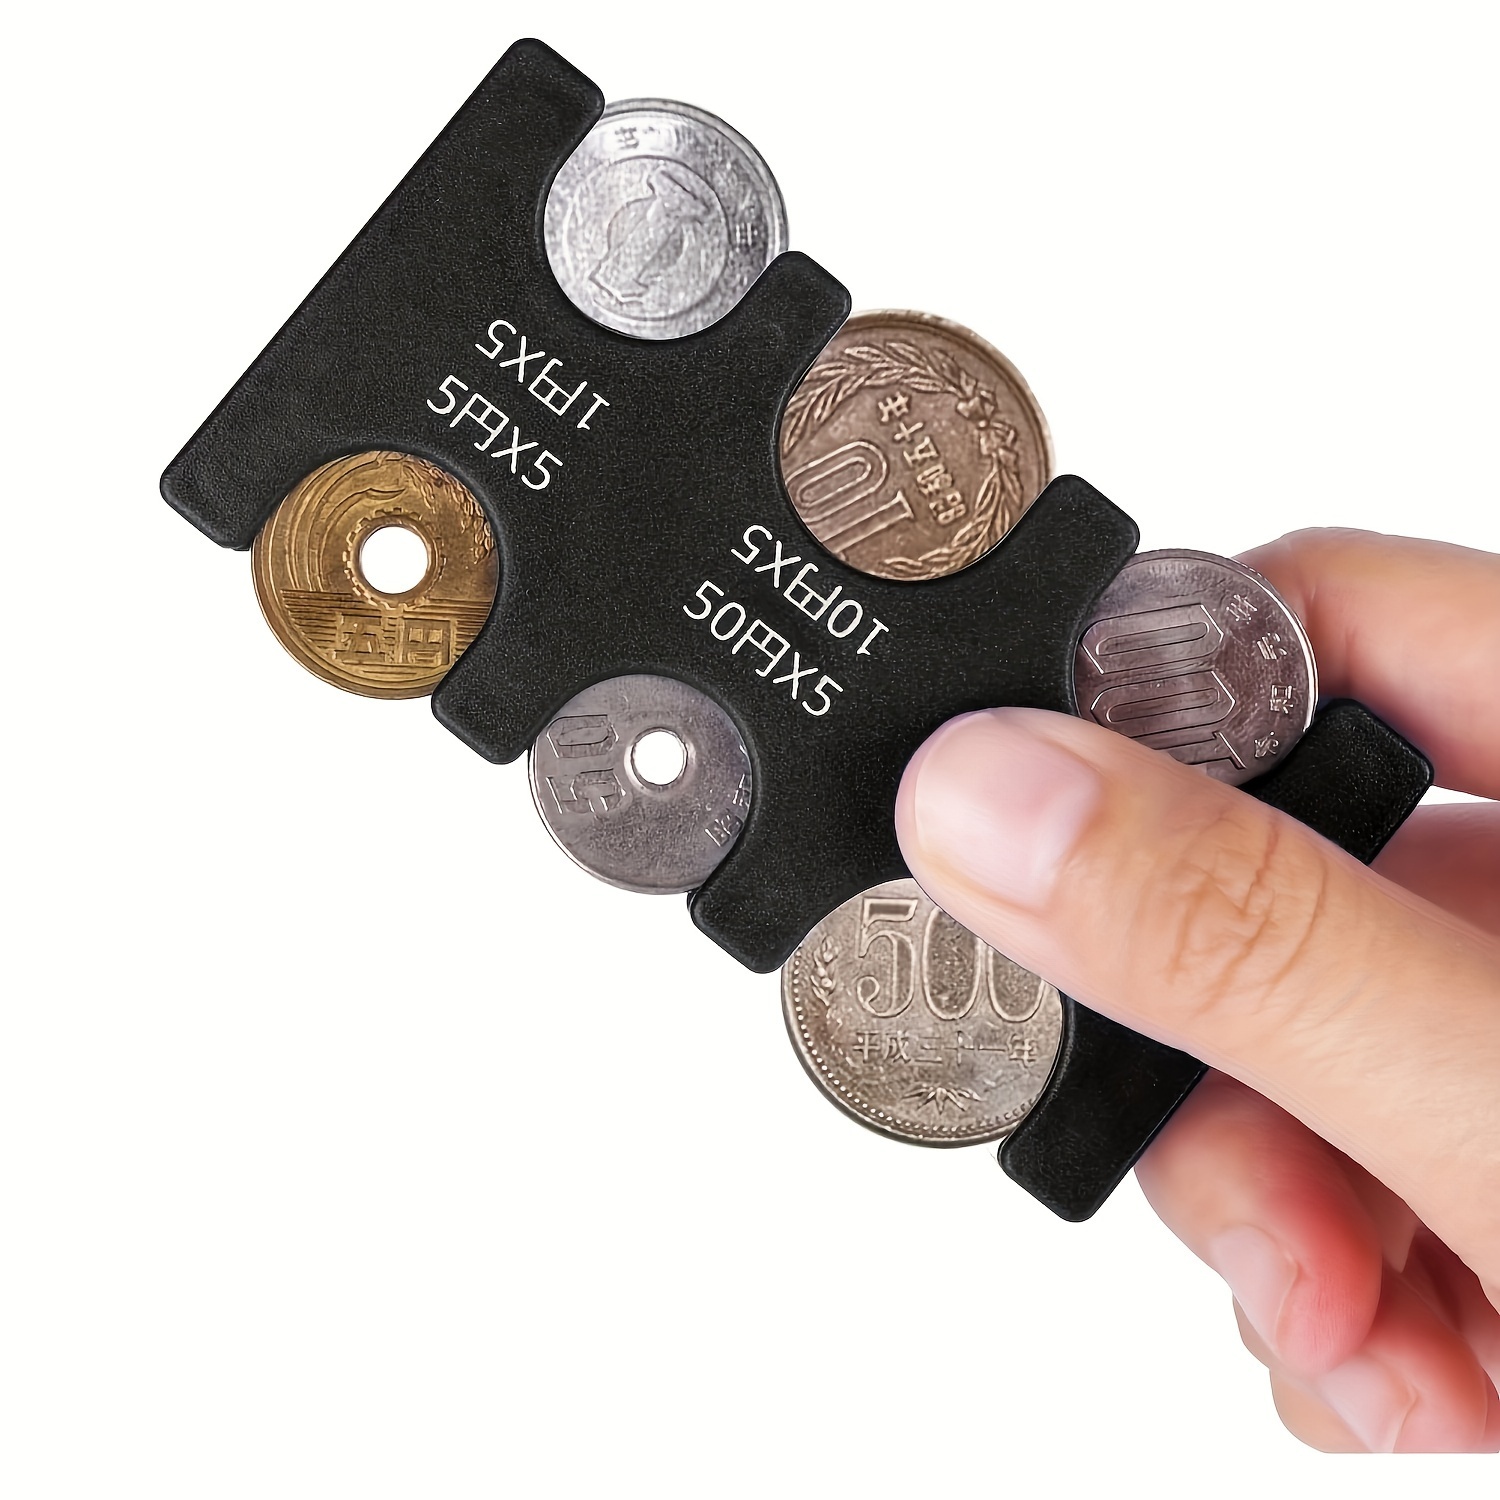 TeamSky Portamonedas Compacto con clasificador de 8 Monedas